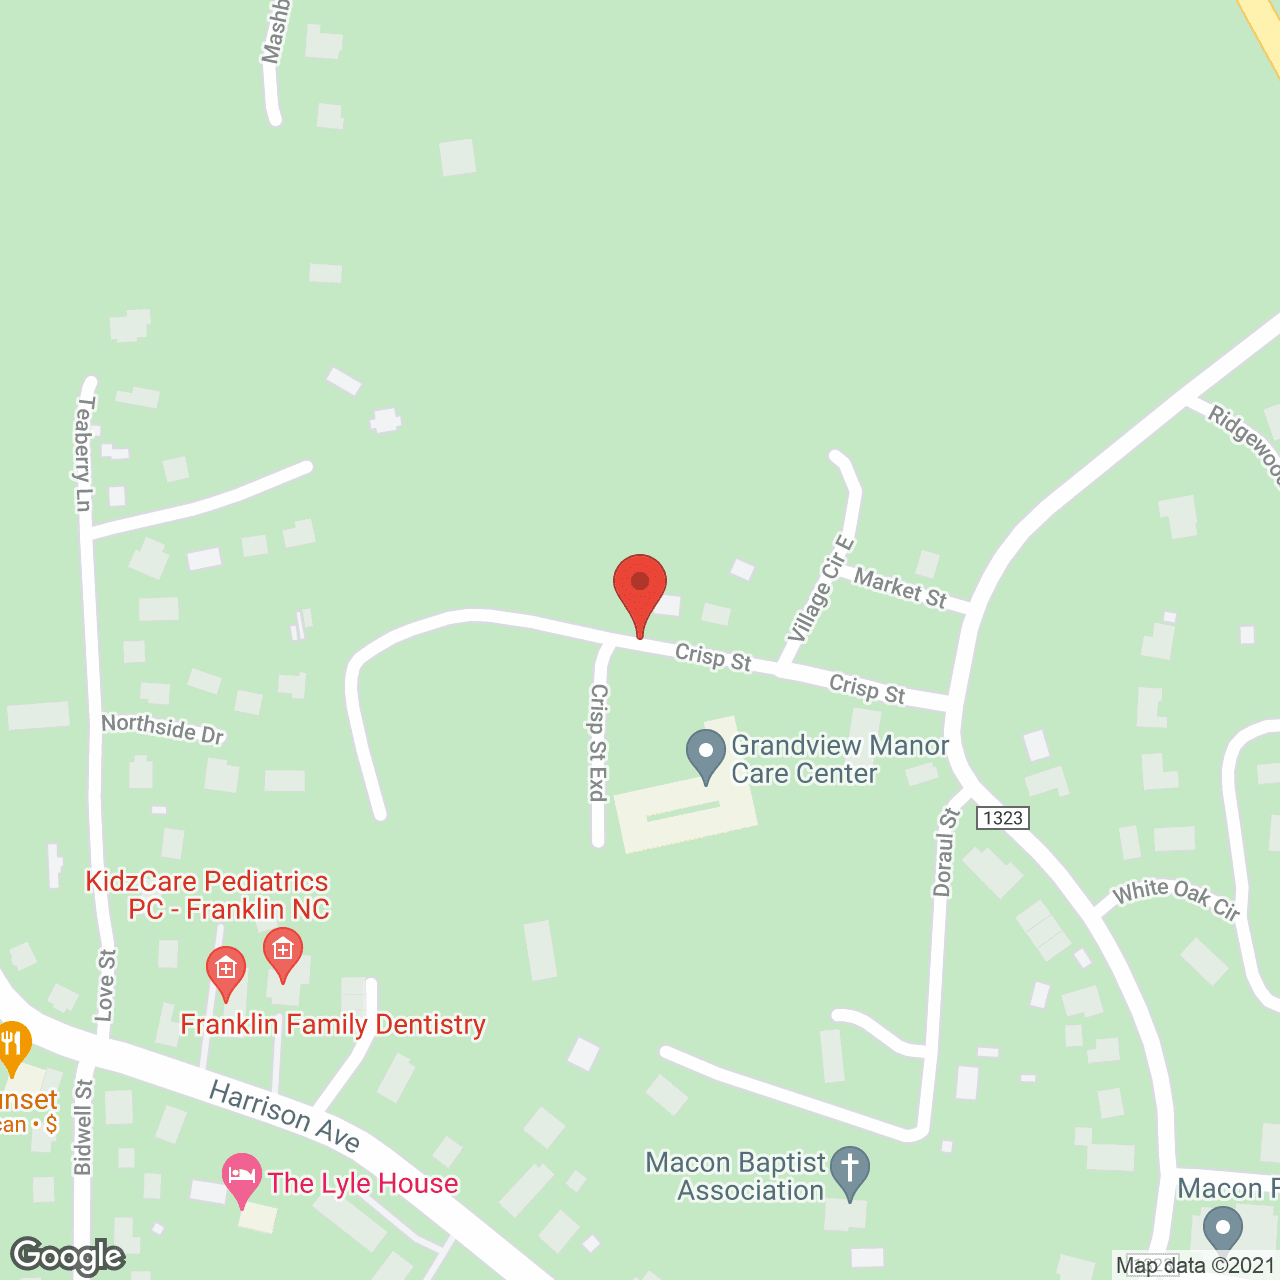 Grandview Manor Care Ctr in google map